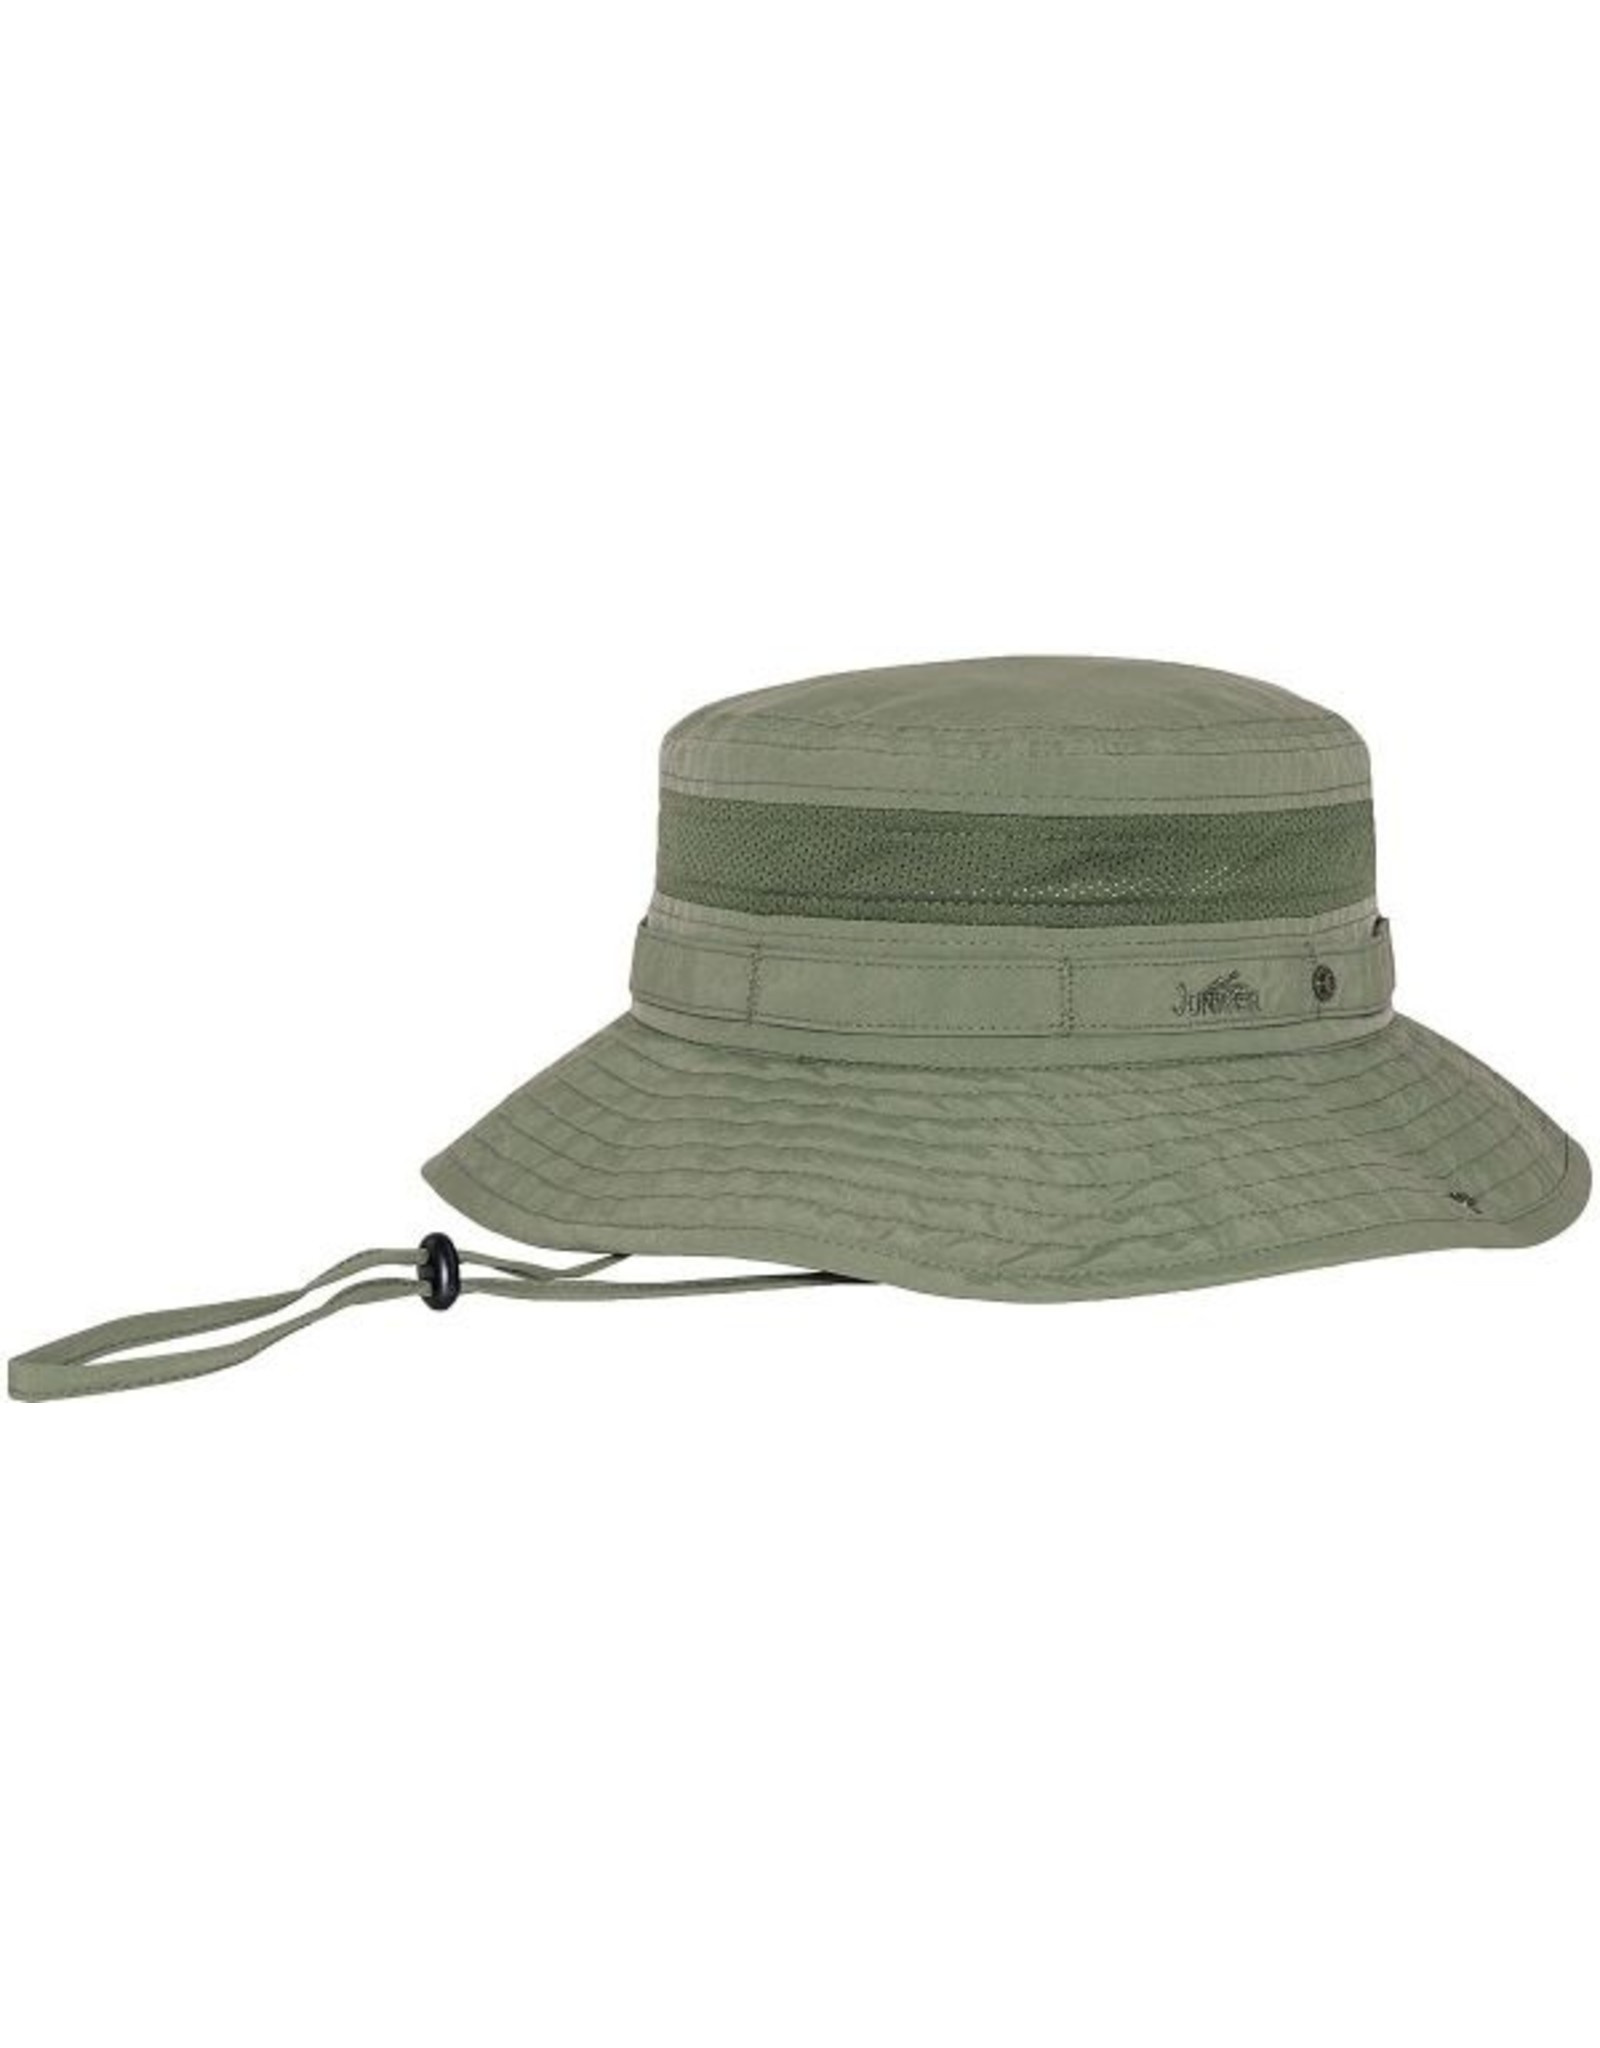 Jungle Boone Hat w/ Snap Brim